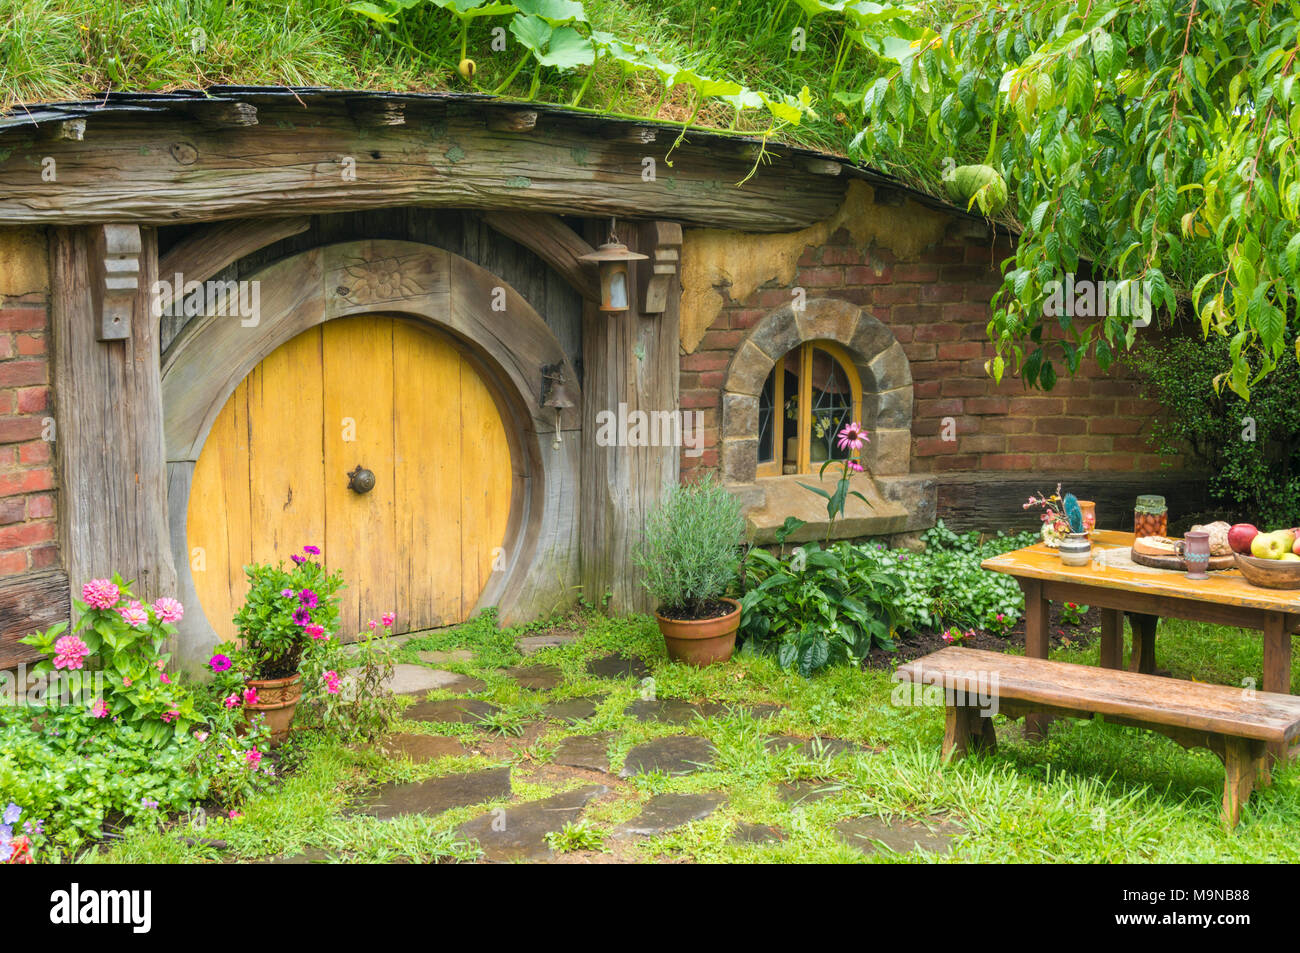 Nueva Zelanda Nueva Zelanda Matamata Hobbiton Hobbiton plató aldea ficticia de Hobbiton en la comarca de El Hobbit y el señor de los anillos libros Foto de stock